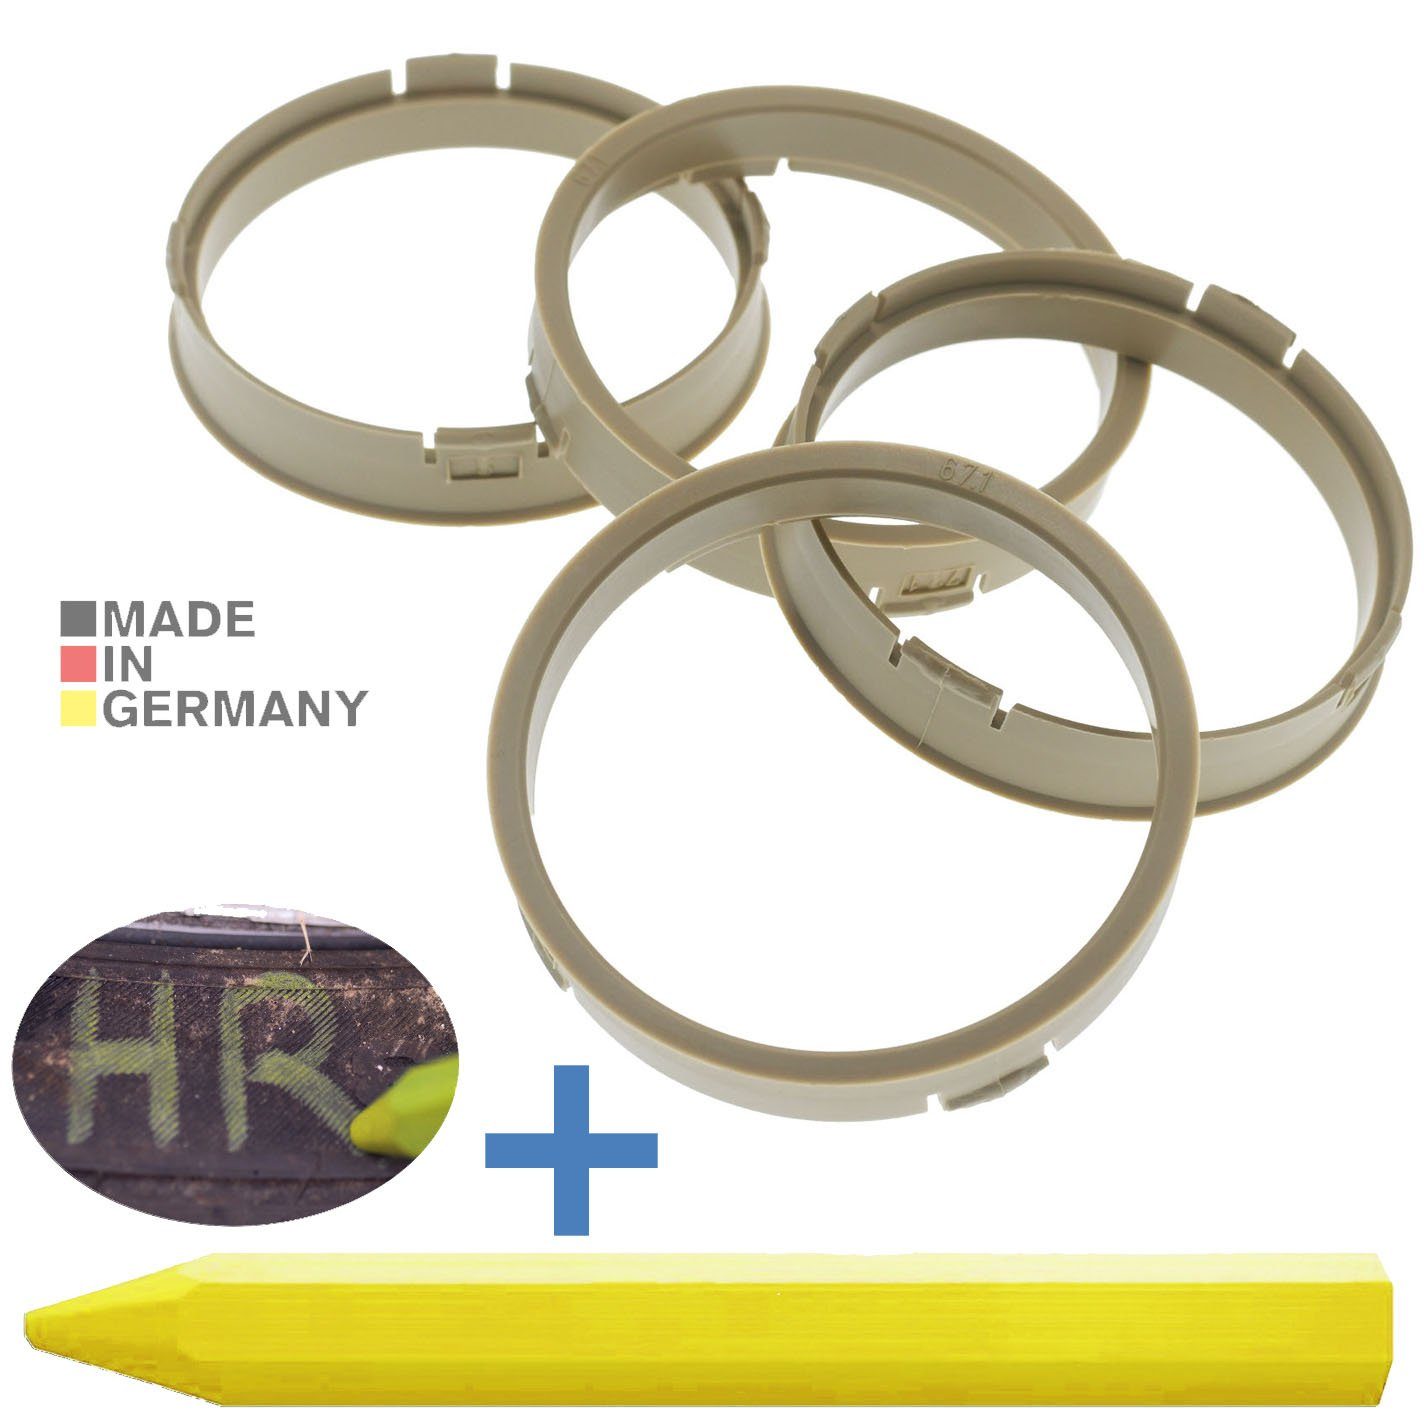 RKC Reifenstift 4X Zentrierringe Beige Felgen Ringe + 1x Reifen Kreide Fett Stift, Maße: 73,1 x 67,1 mm